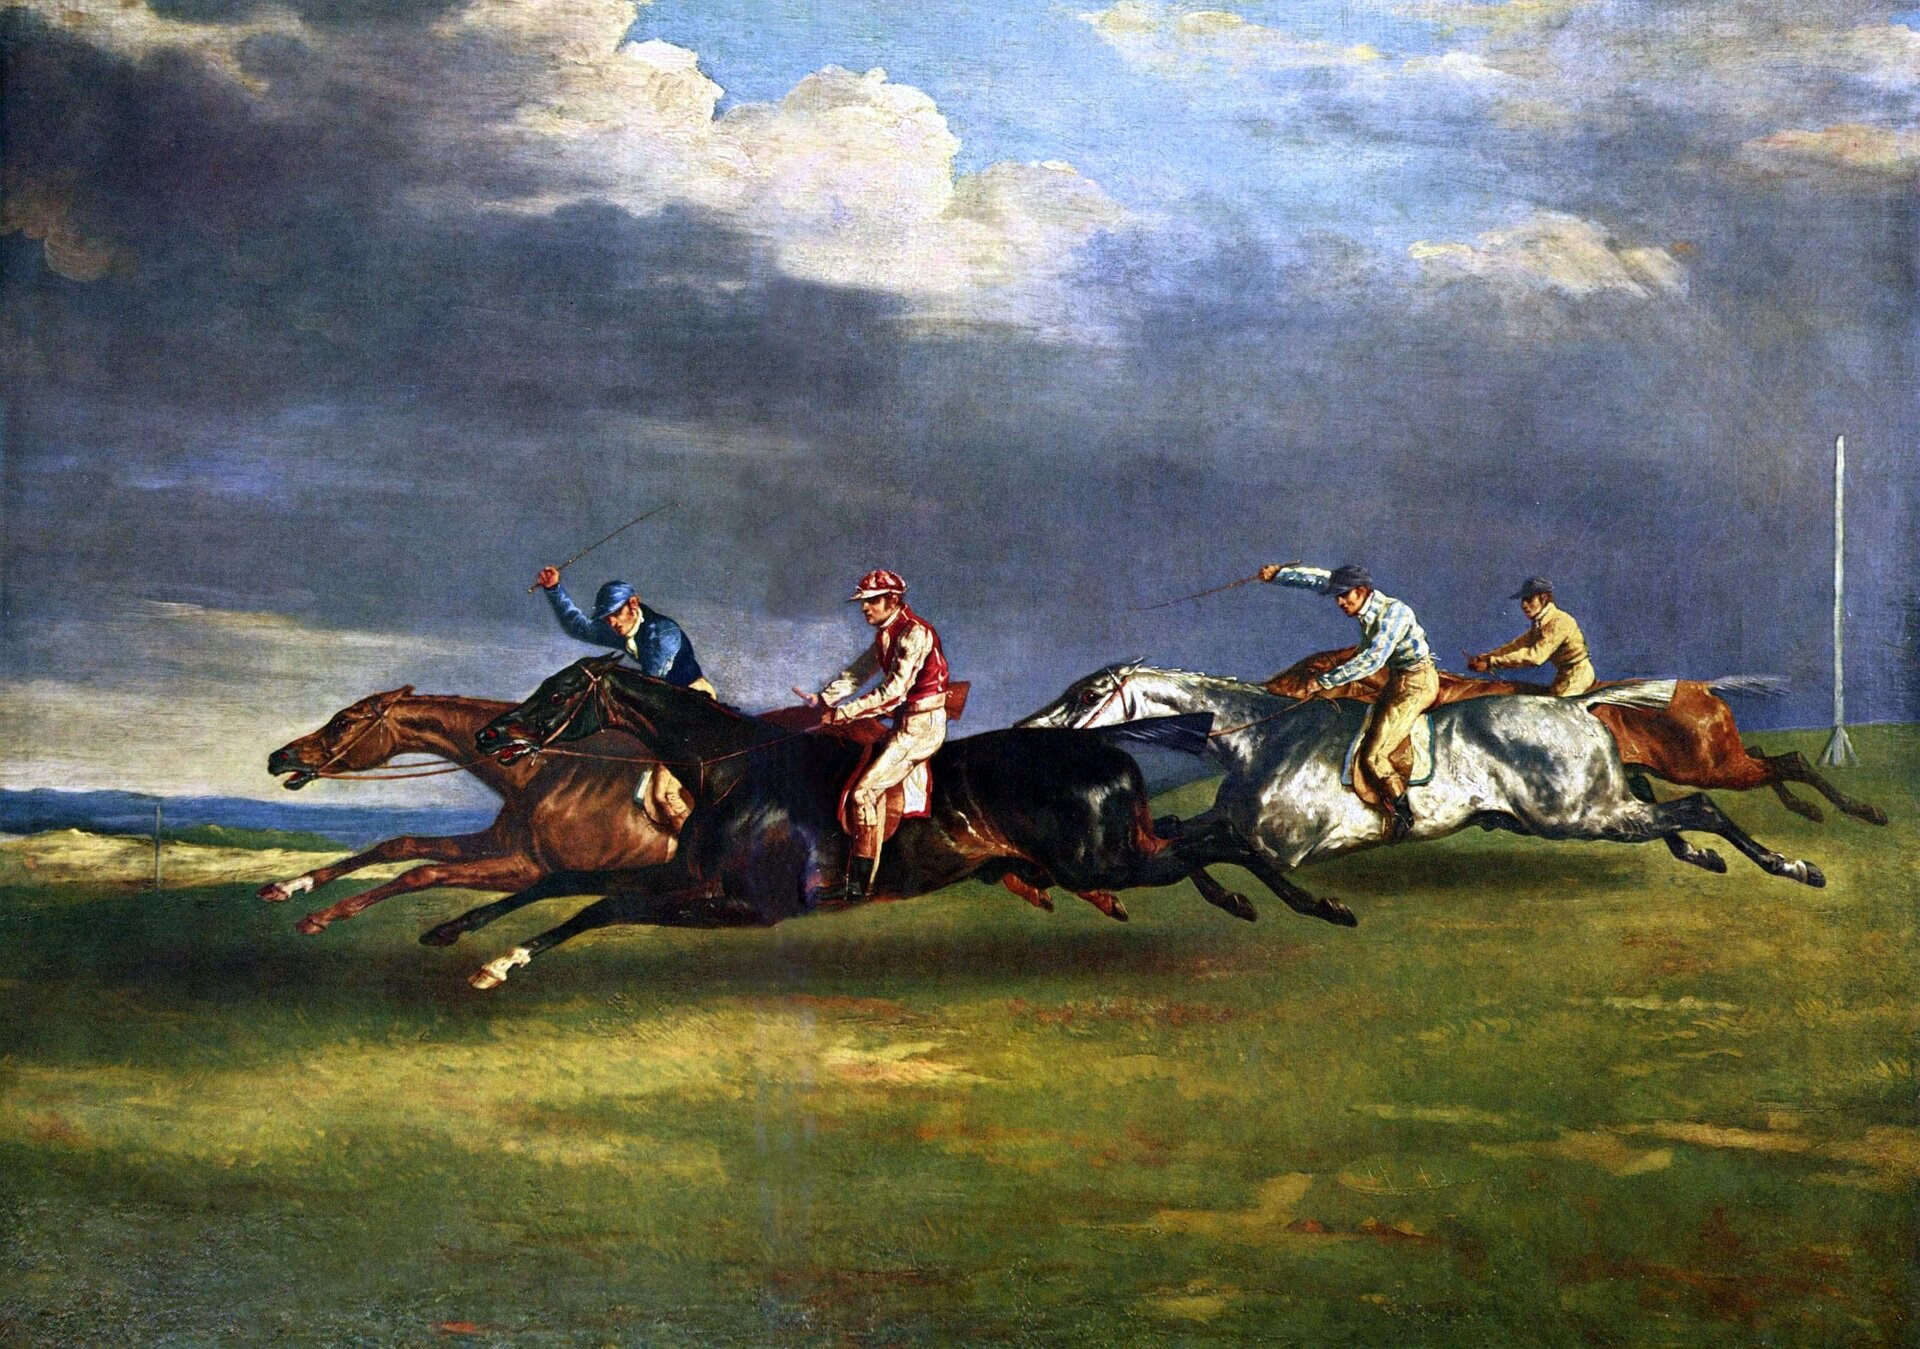 Ilustracja przedstawia obraz Théodore’a Géricault „Derby w Epsom”. Na obrazie widoczny jest wyścig konny, w którym bierze udział czterech jeźdźców. Konie biegną po polanie. W tle widoczne są ciemne chmury. 